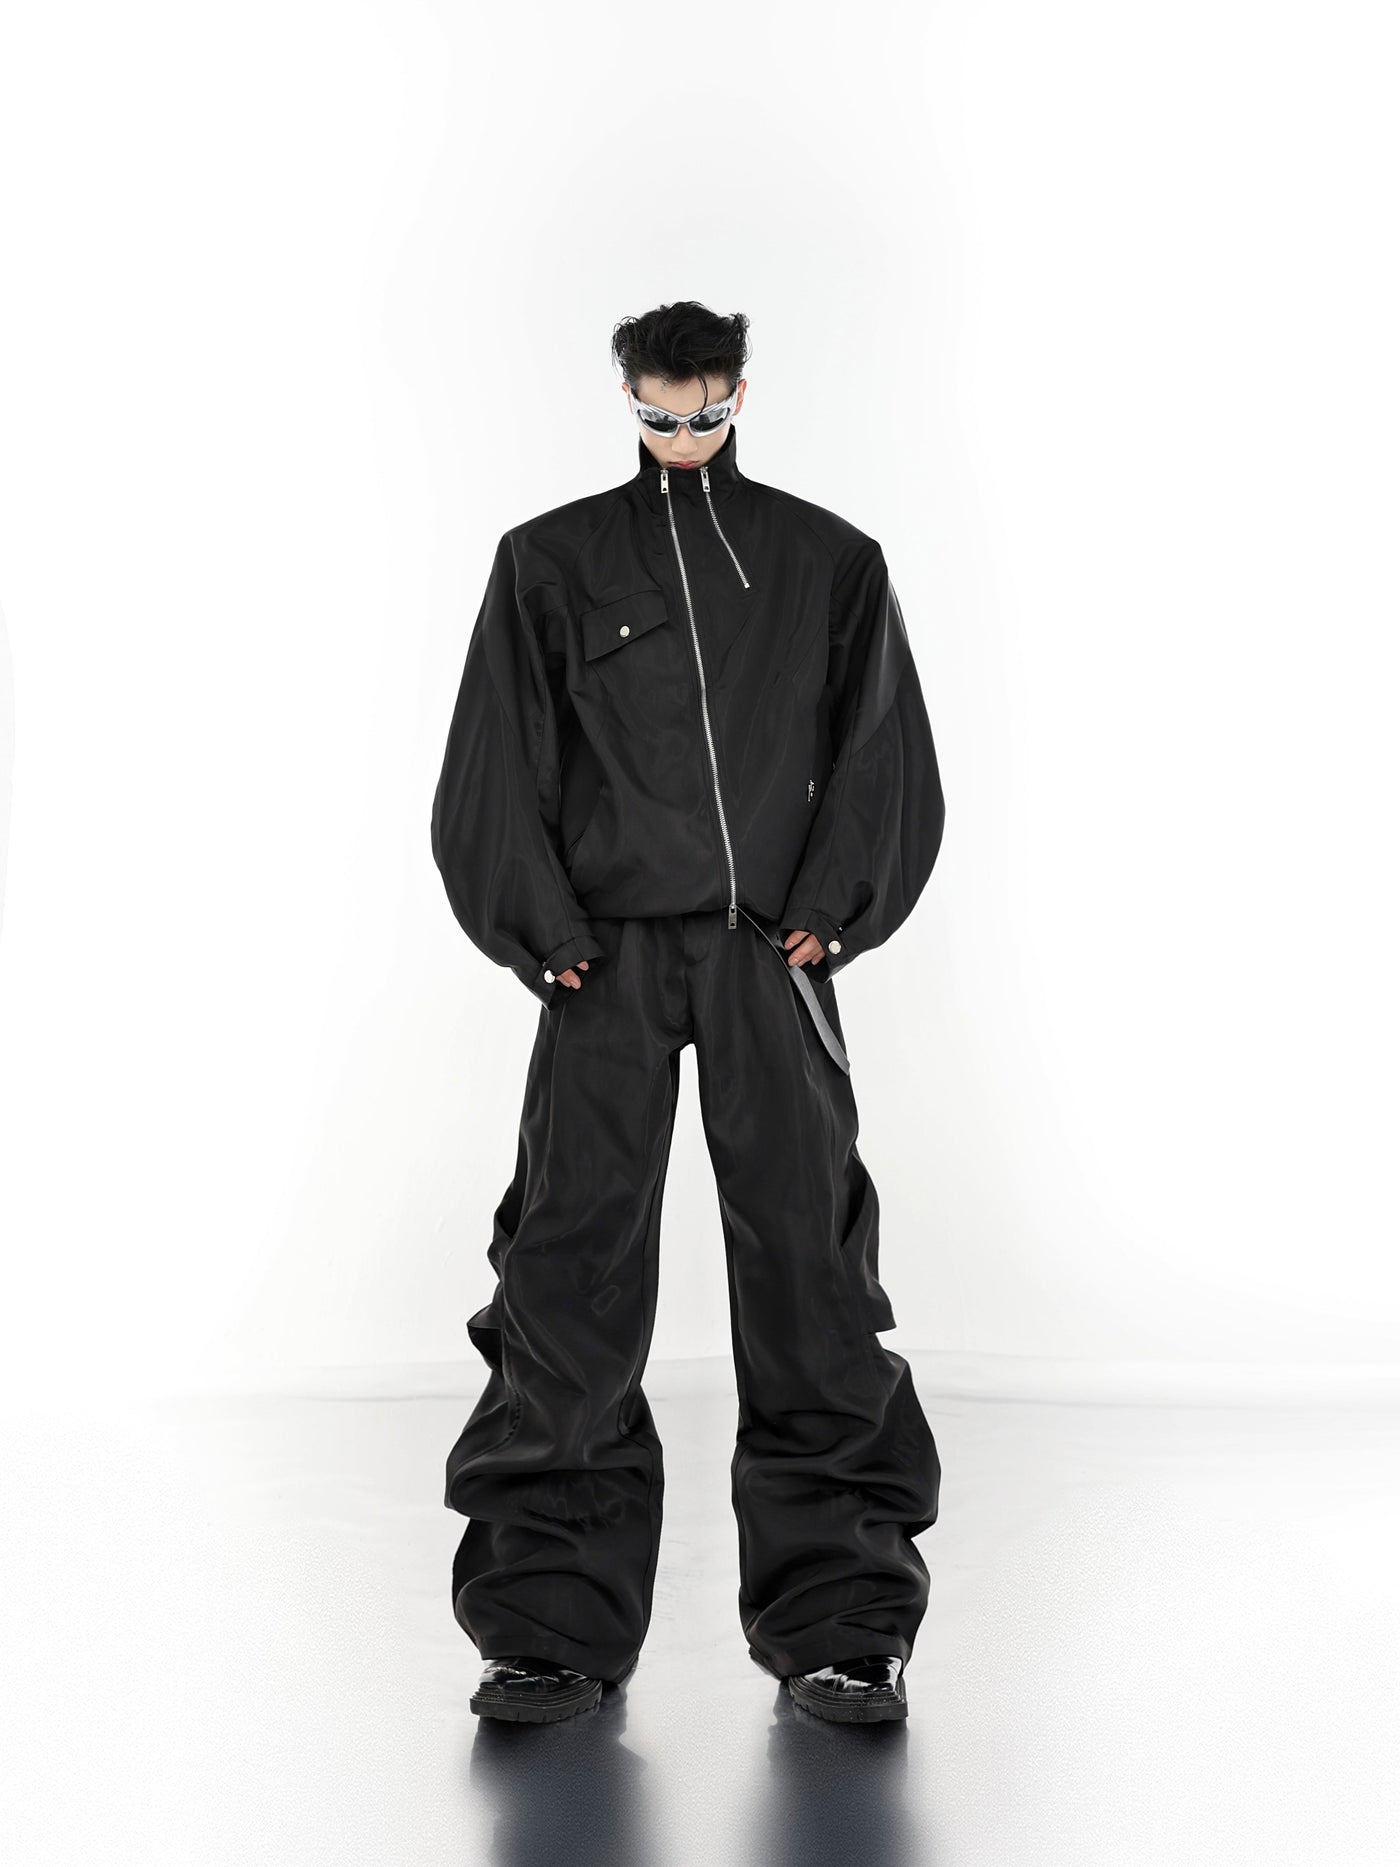 Fold Machete Metal Zip Jacket & Pants Set Korean Street Fashion Clothing Set By Argue Culture Shop Online at OH Vault